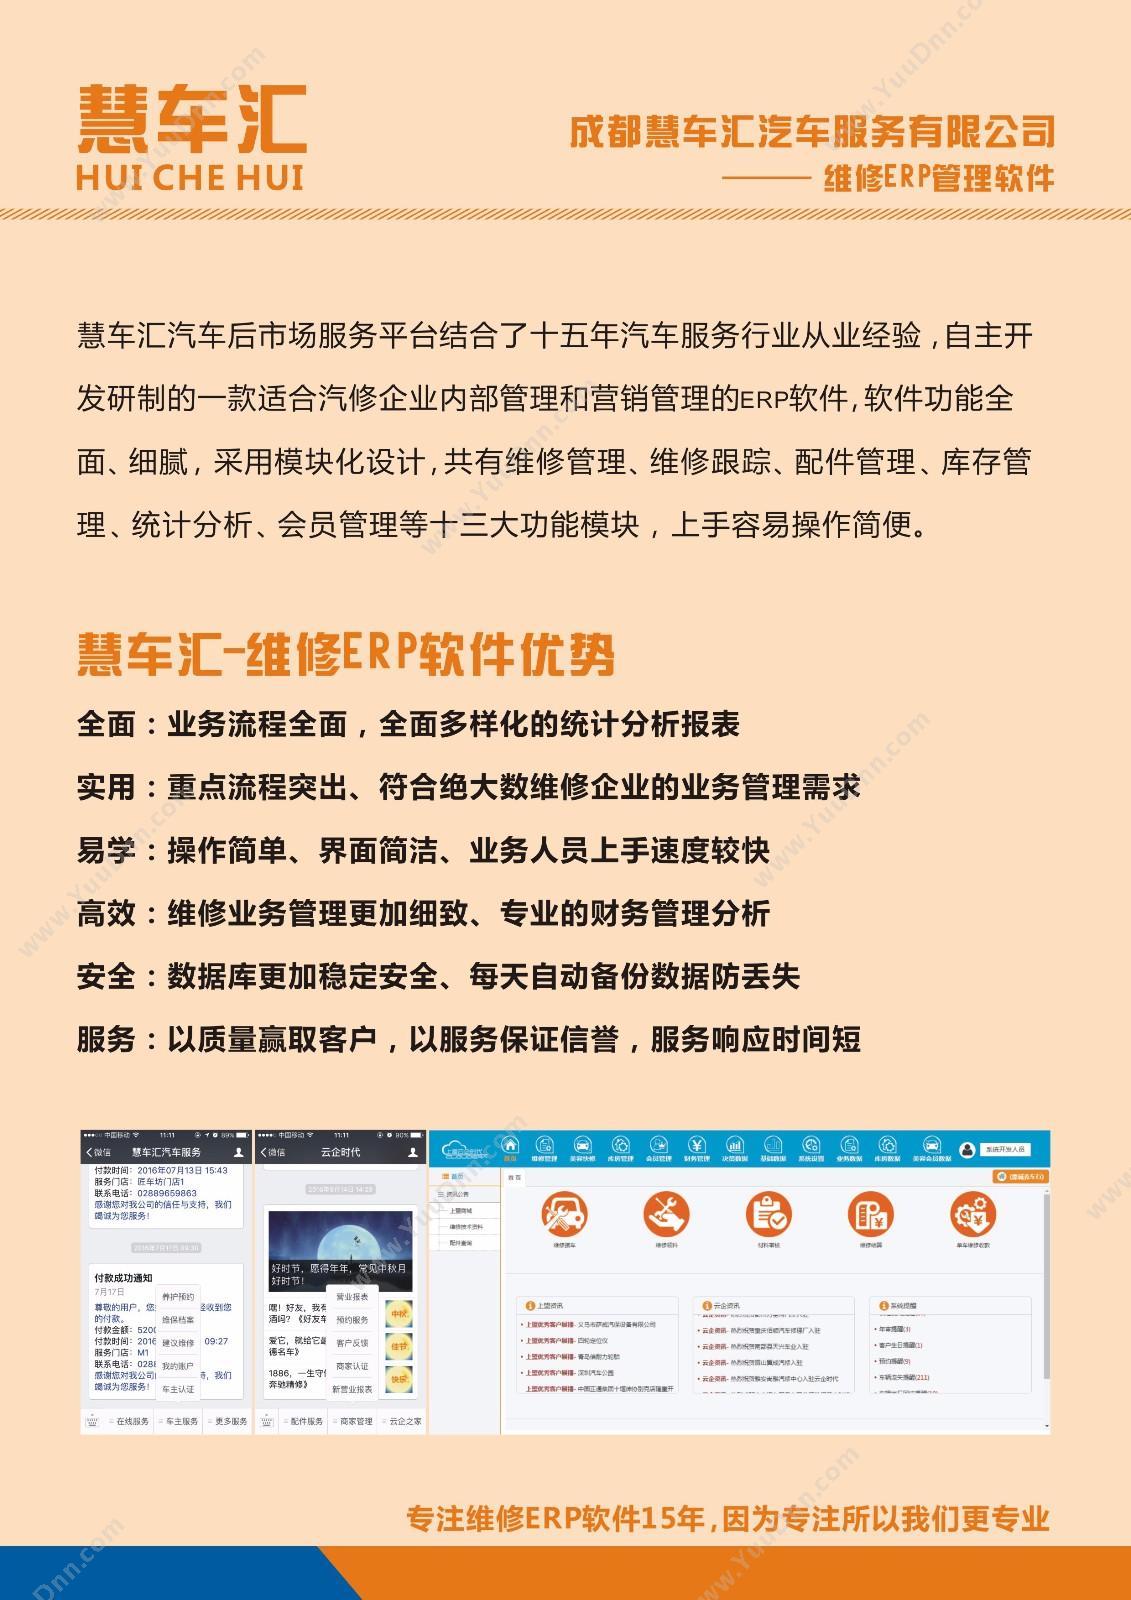 东莞市凝聚力软件开发服务有限公司 深圳考勤系统 人力资源